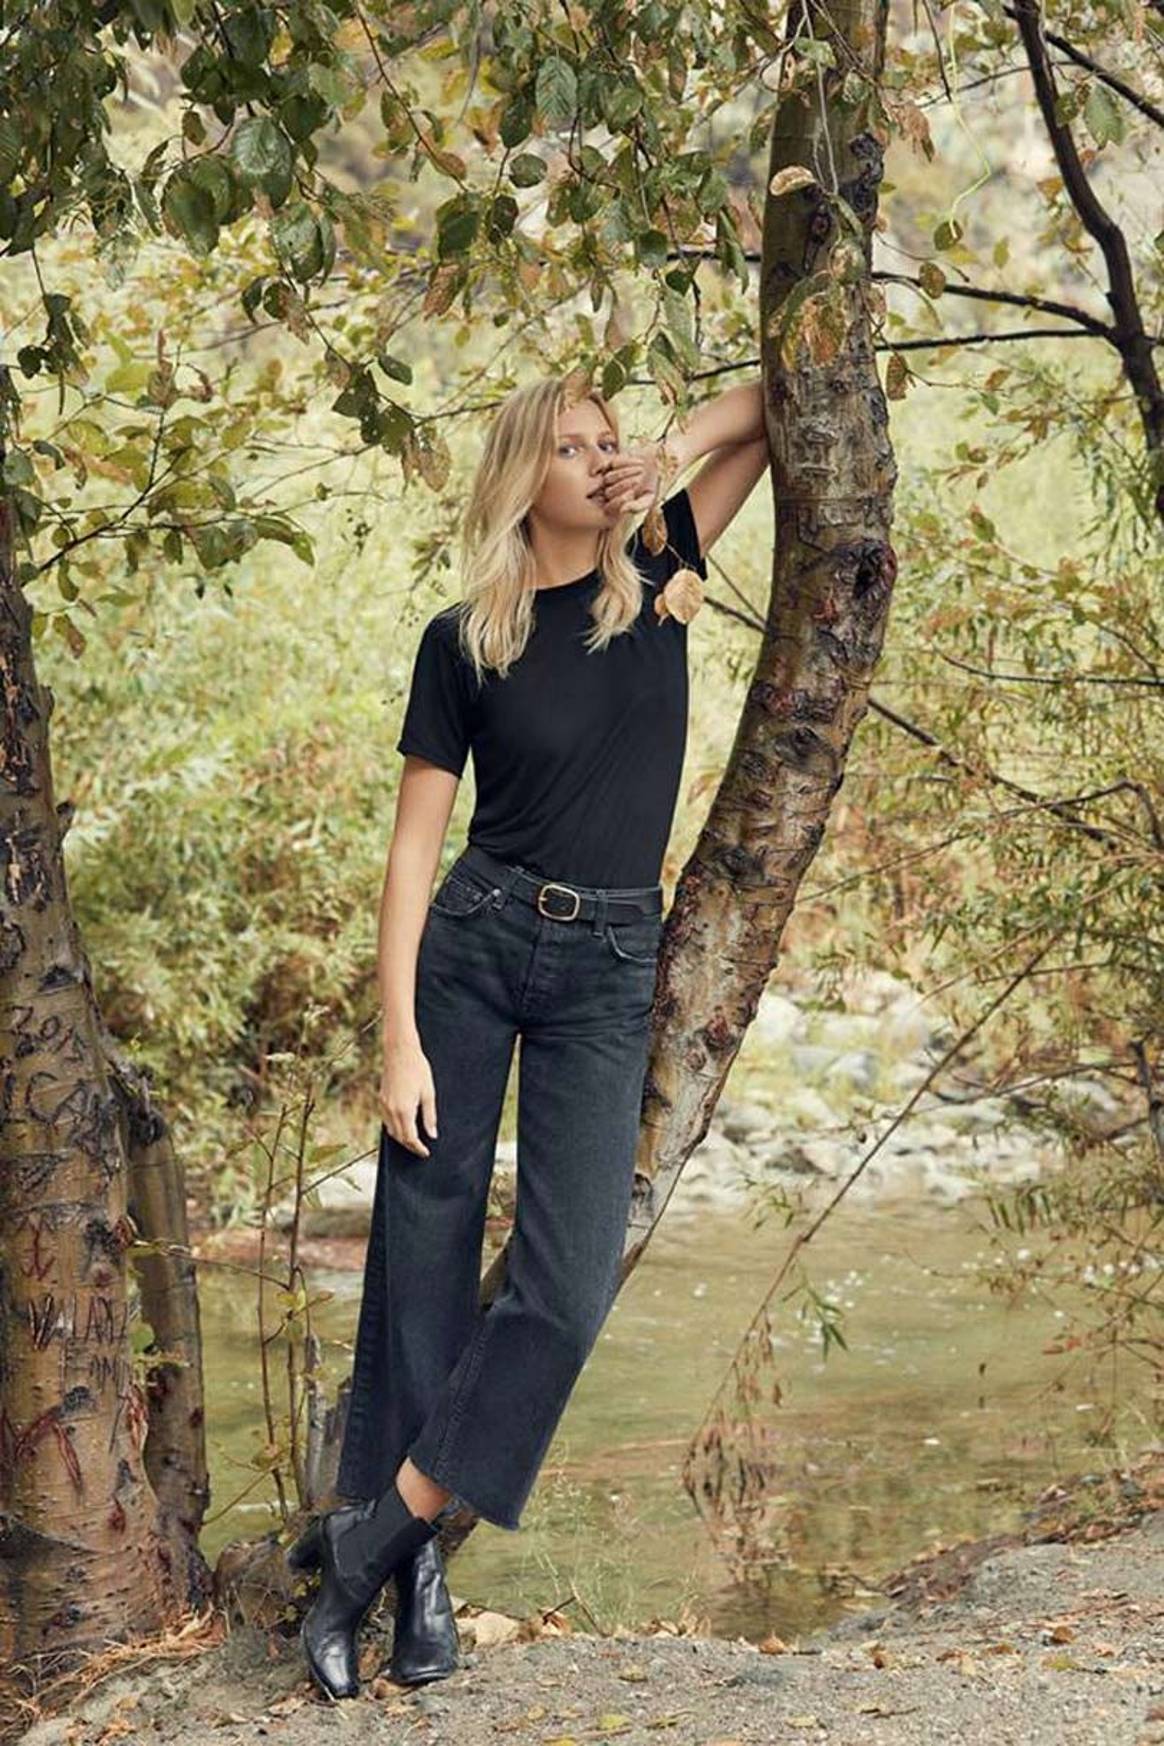 Reformation lanza una marca hermana de denim sostenible, Reformation Jeans